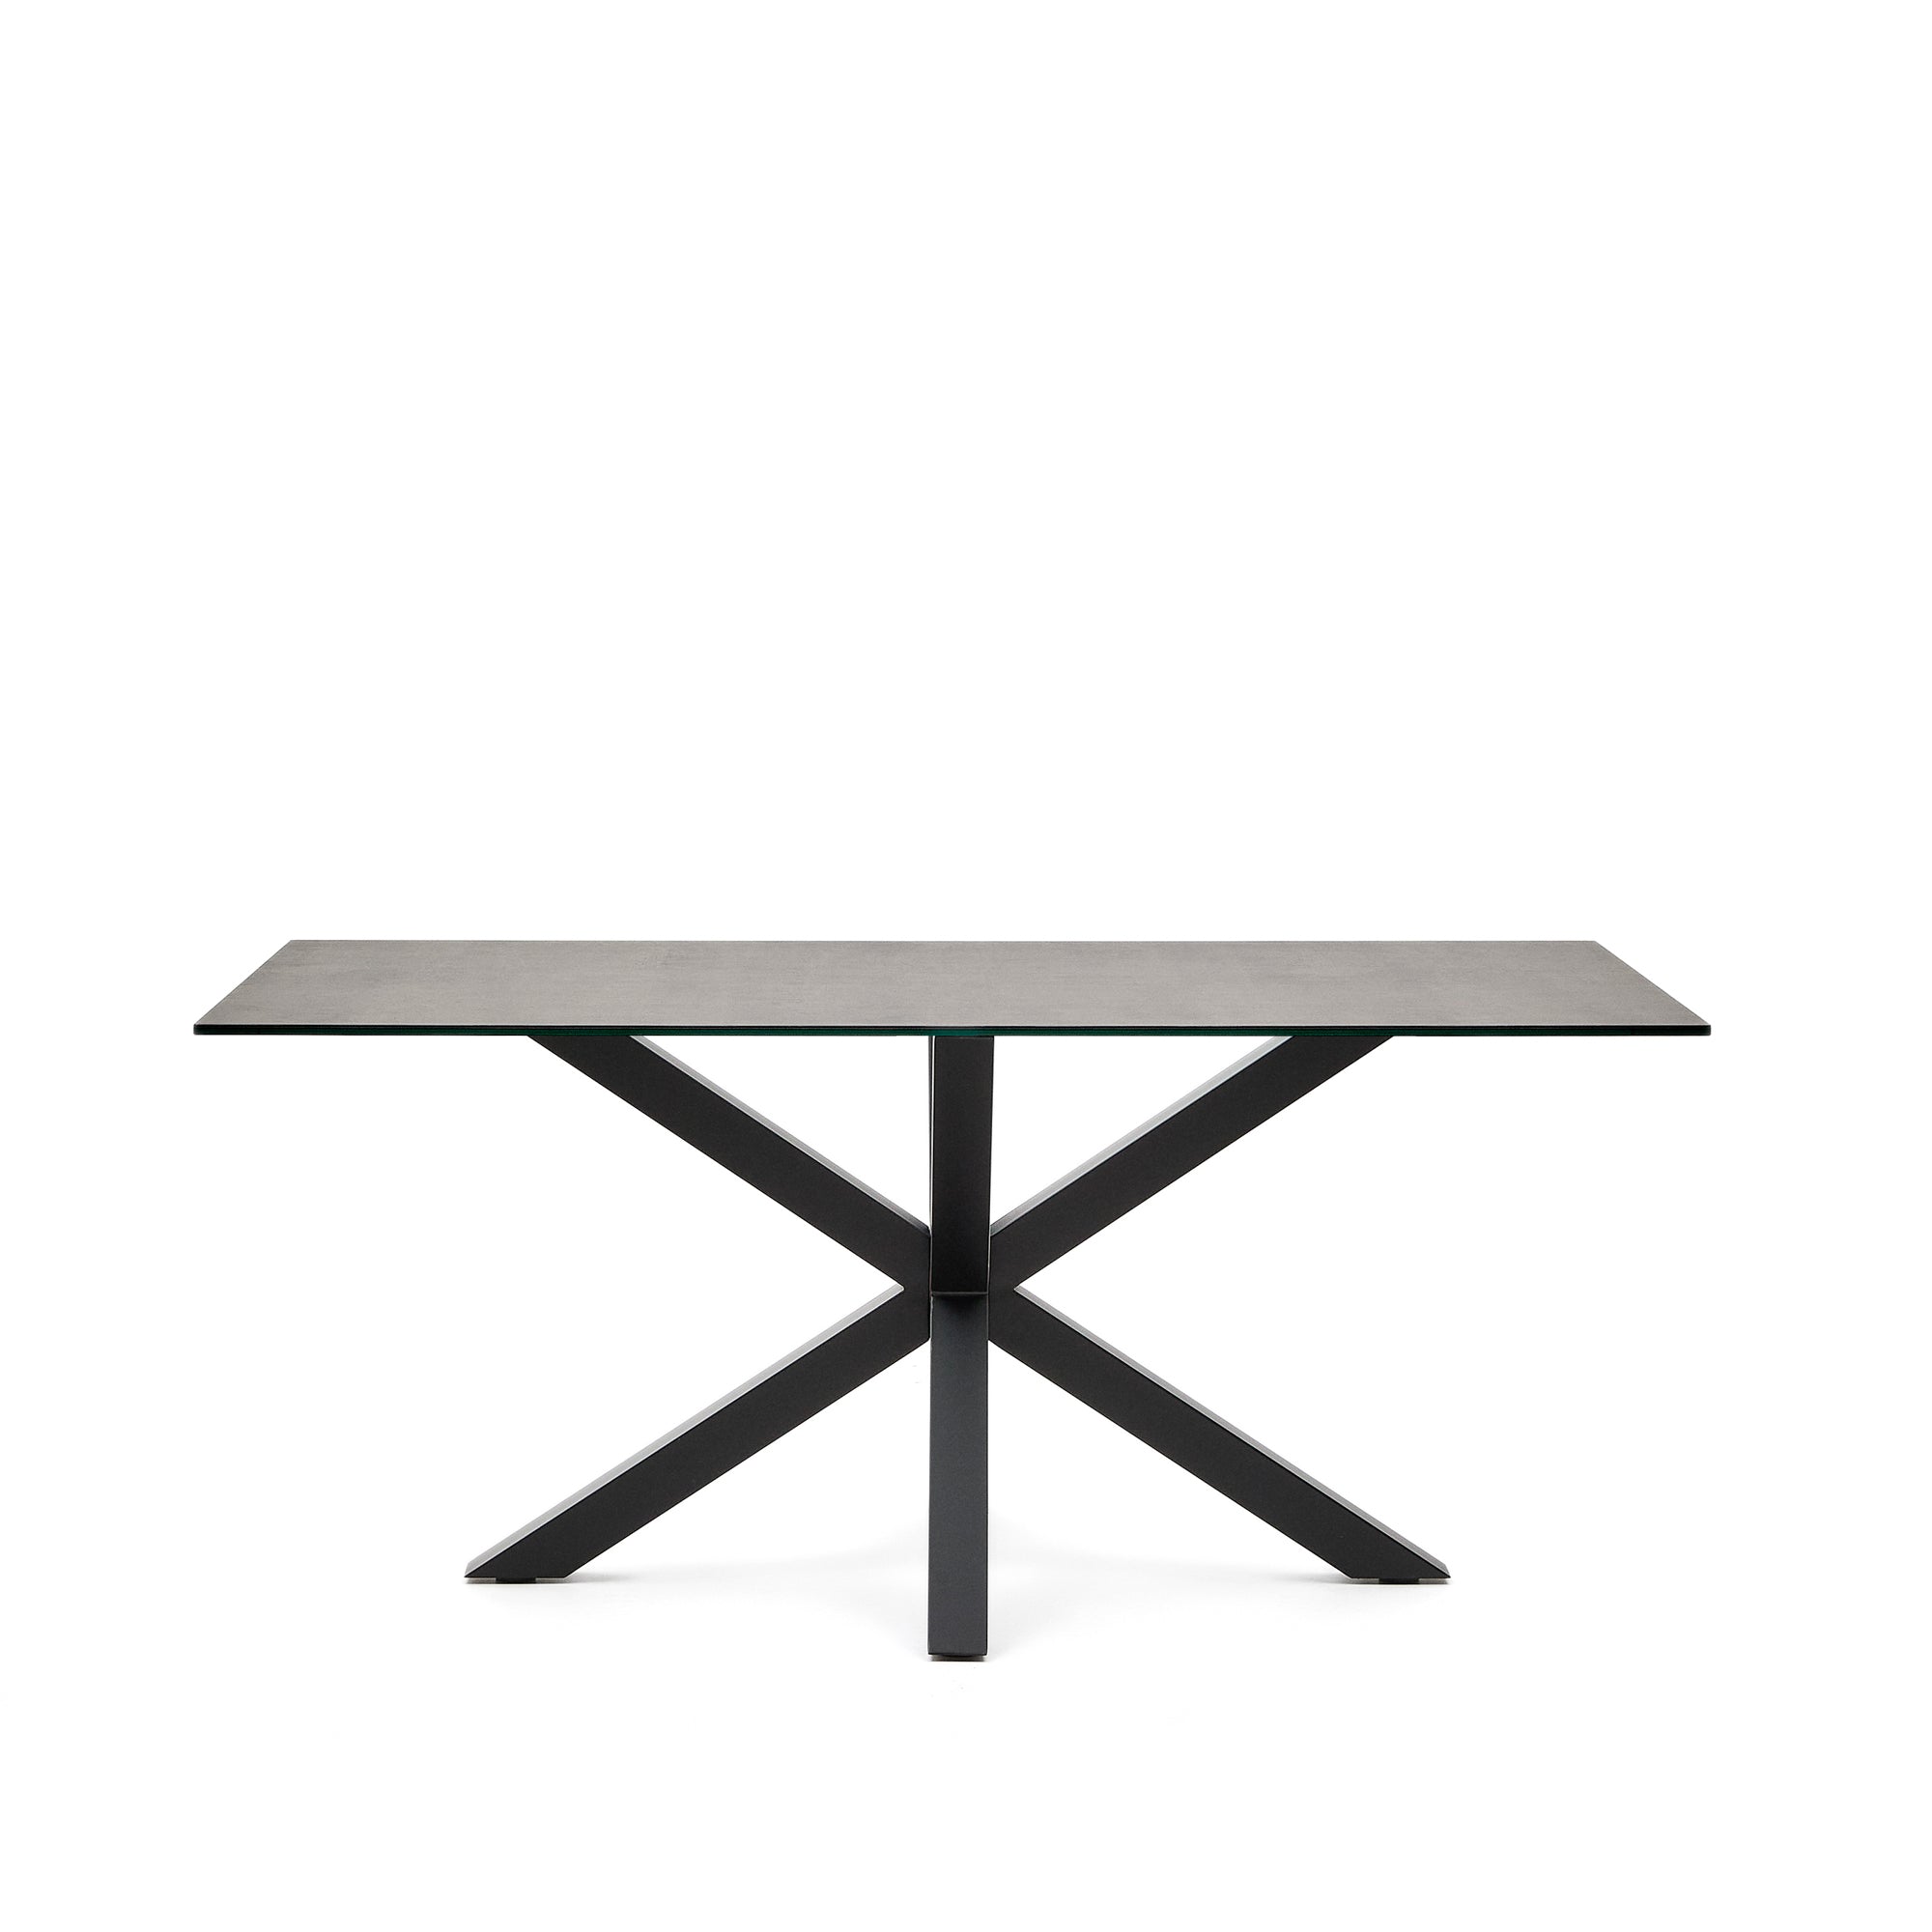 Argo asztal Iron Moss porcelánból és acél lábakkal fekete befejezéssel, 160 x 90 cm